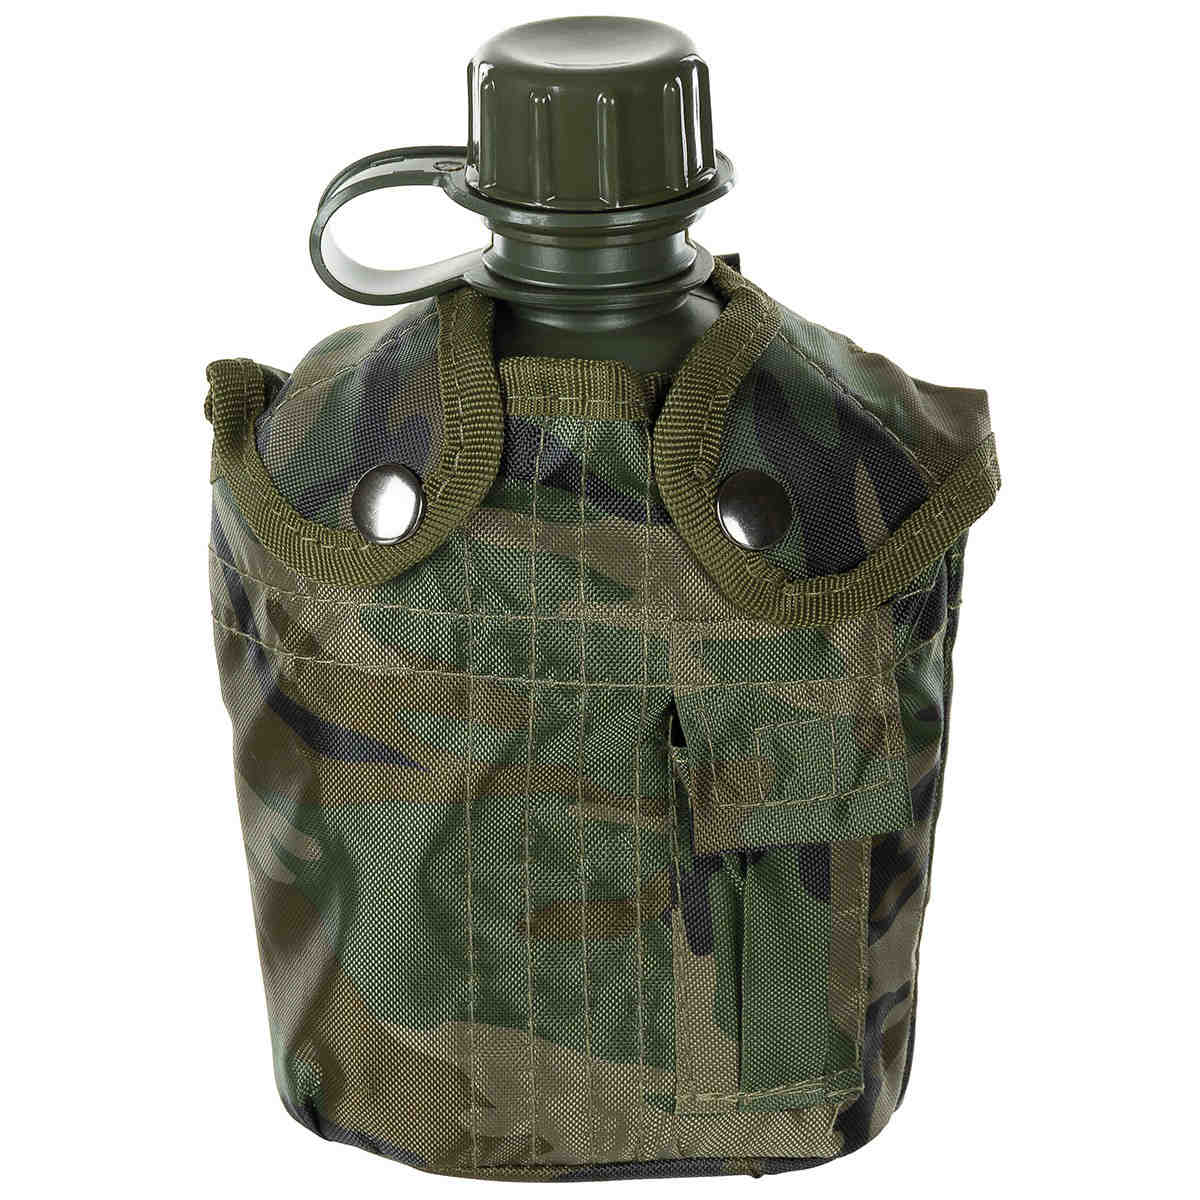 US FELDFLASCHE Kunststoff Trinkflasche Getränkeflasche Army Bundeswehr camo tarn 